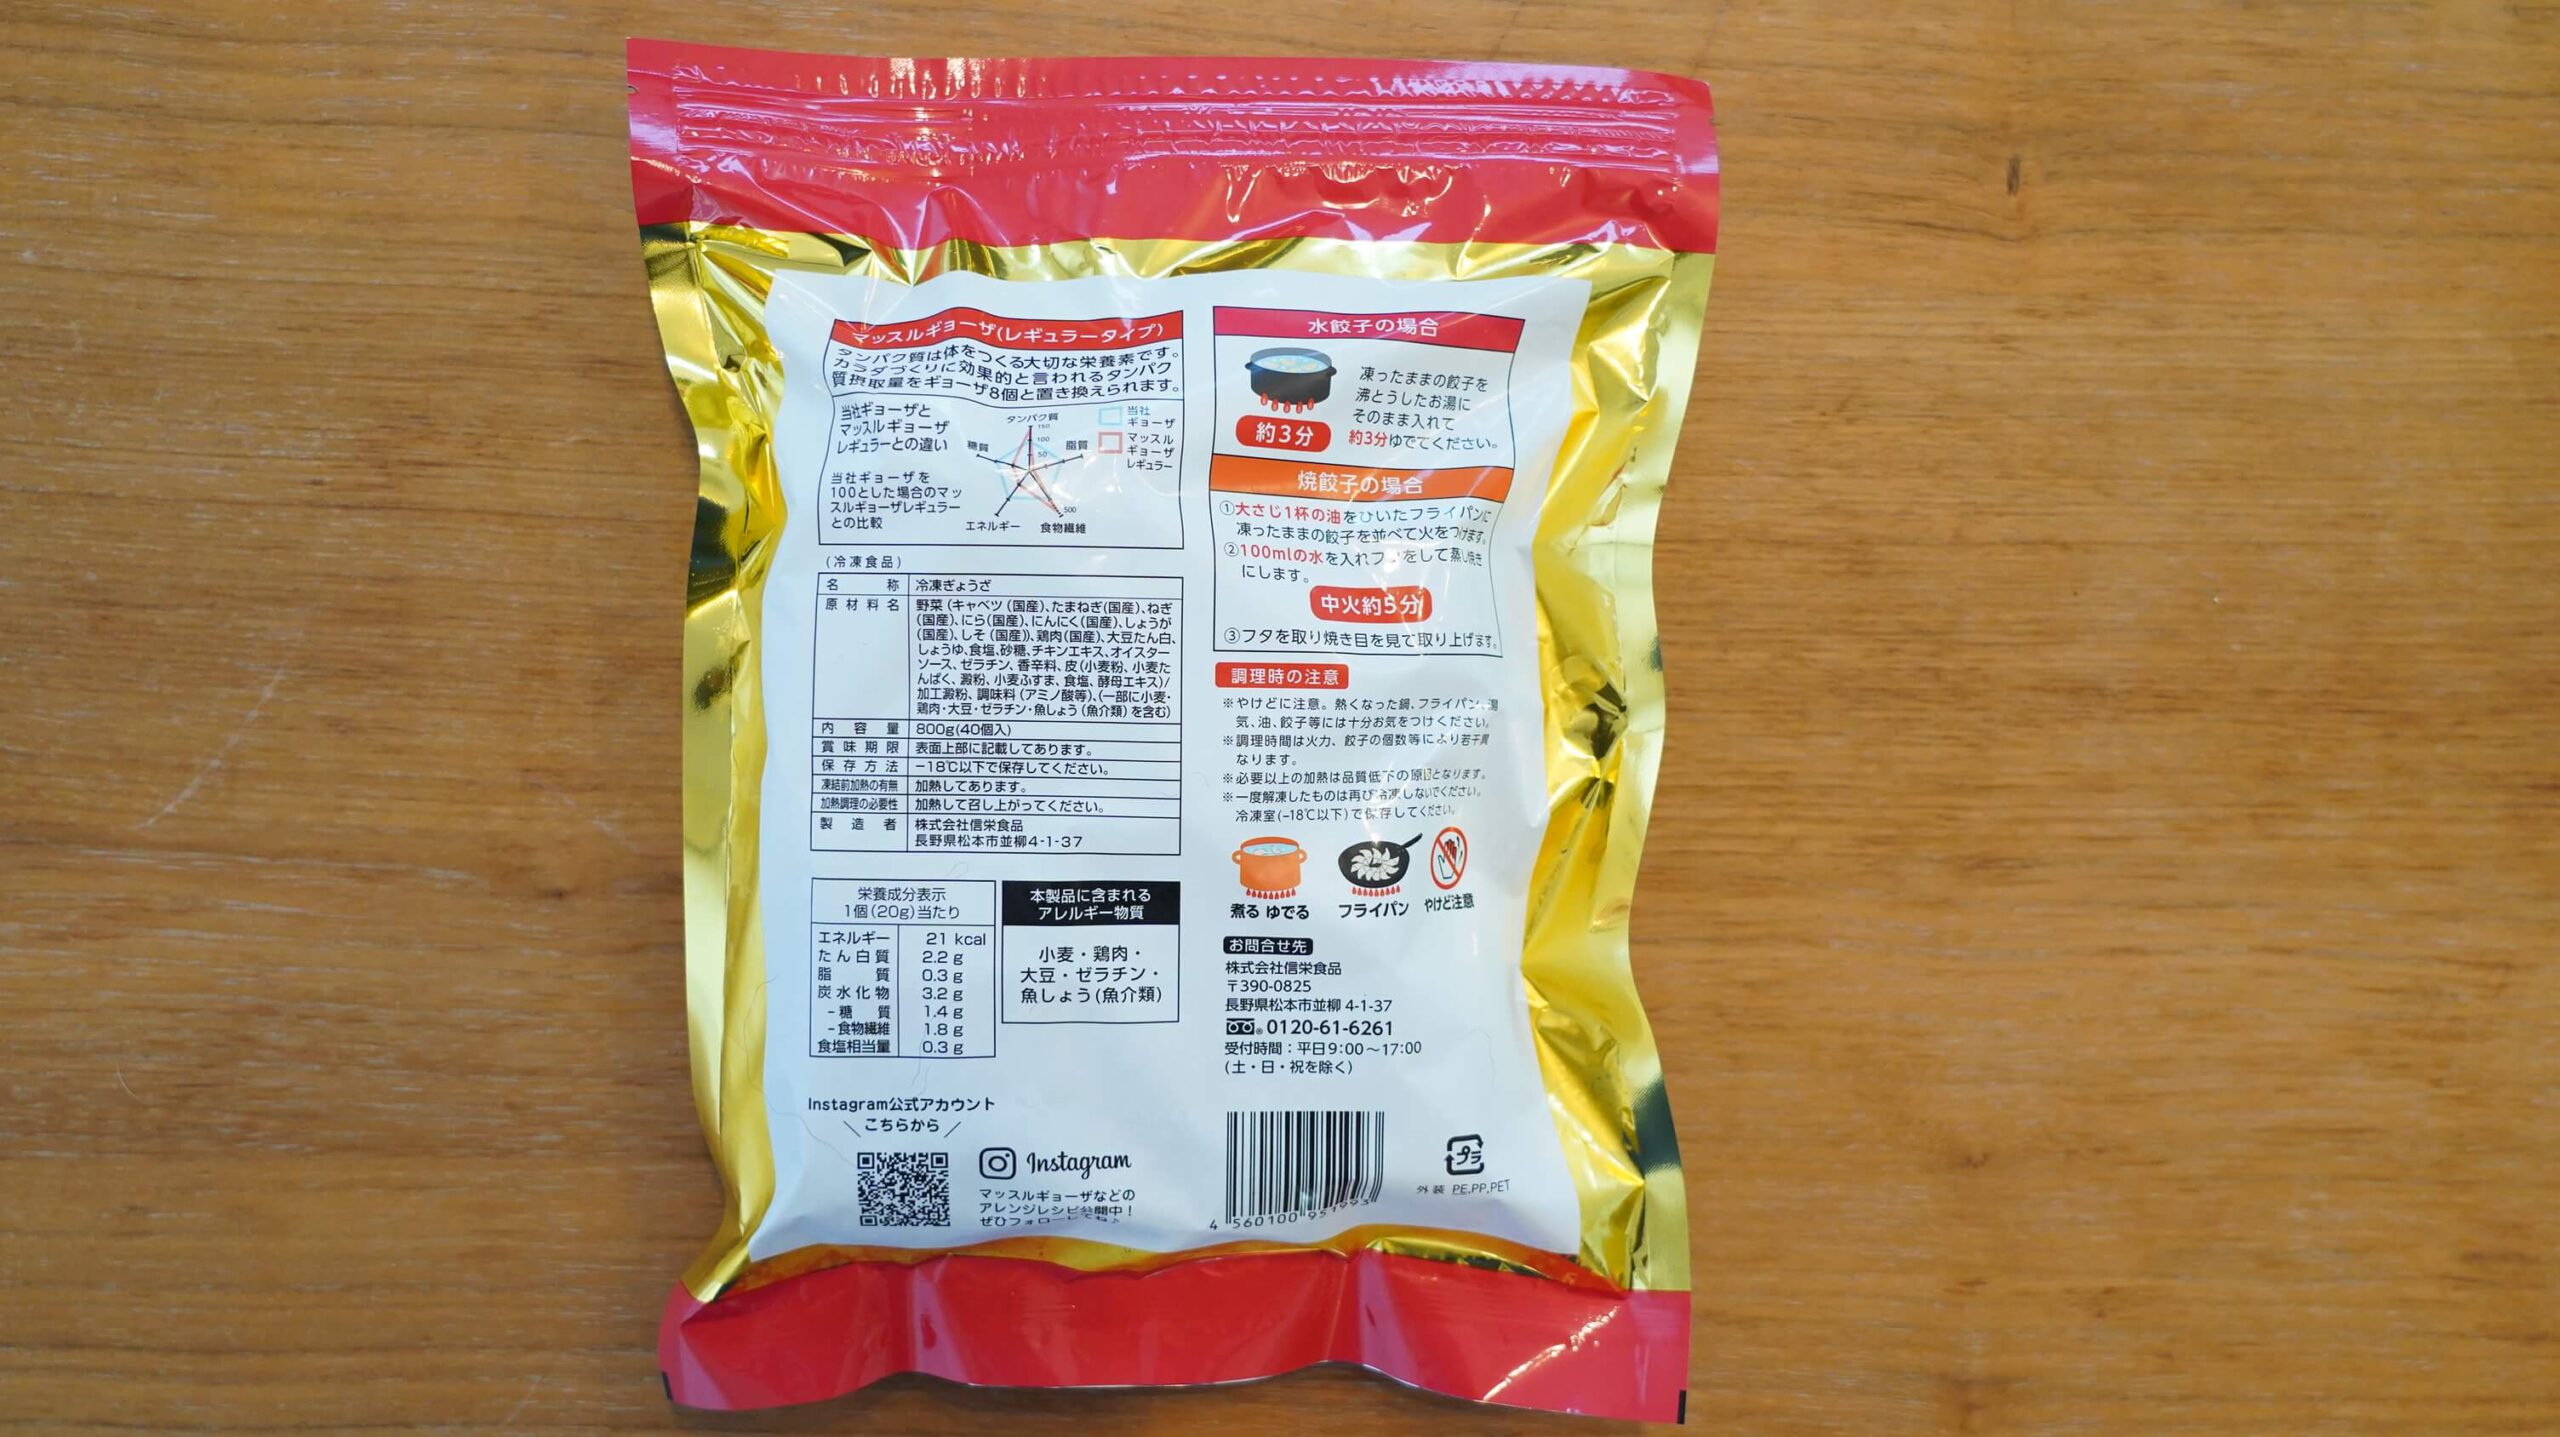 冷凍食品「マッスル餃子」のパッケージ裏面の写真